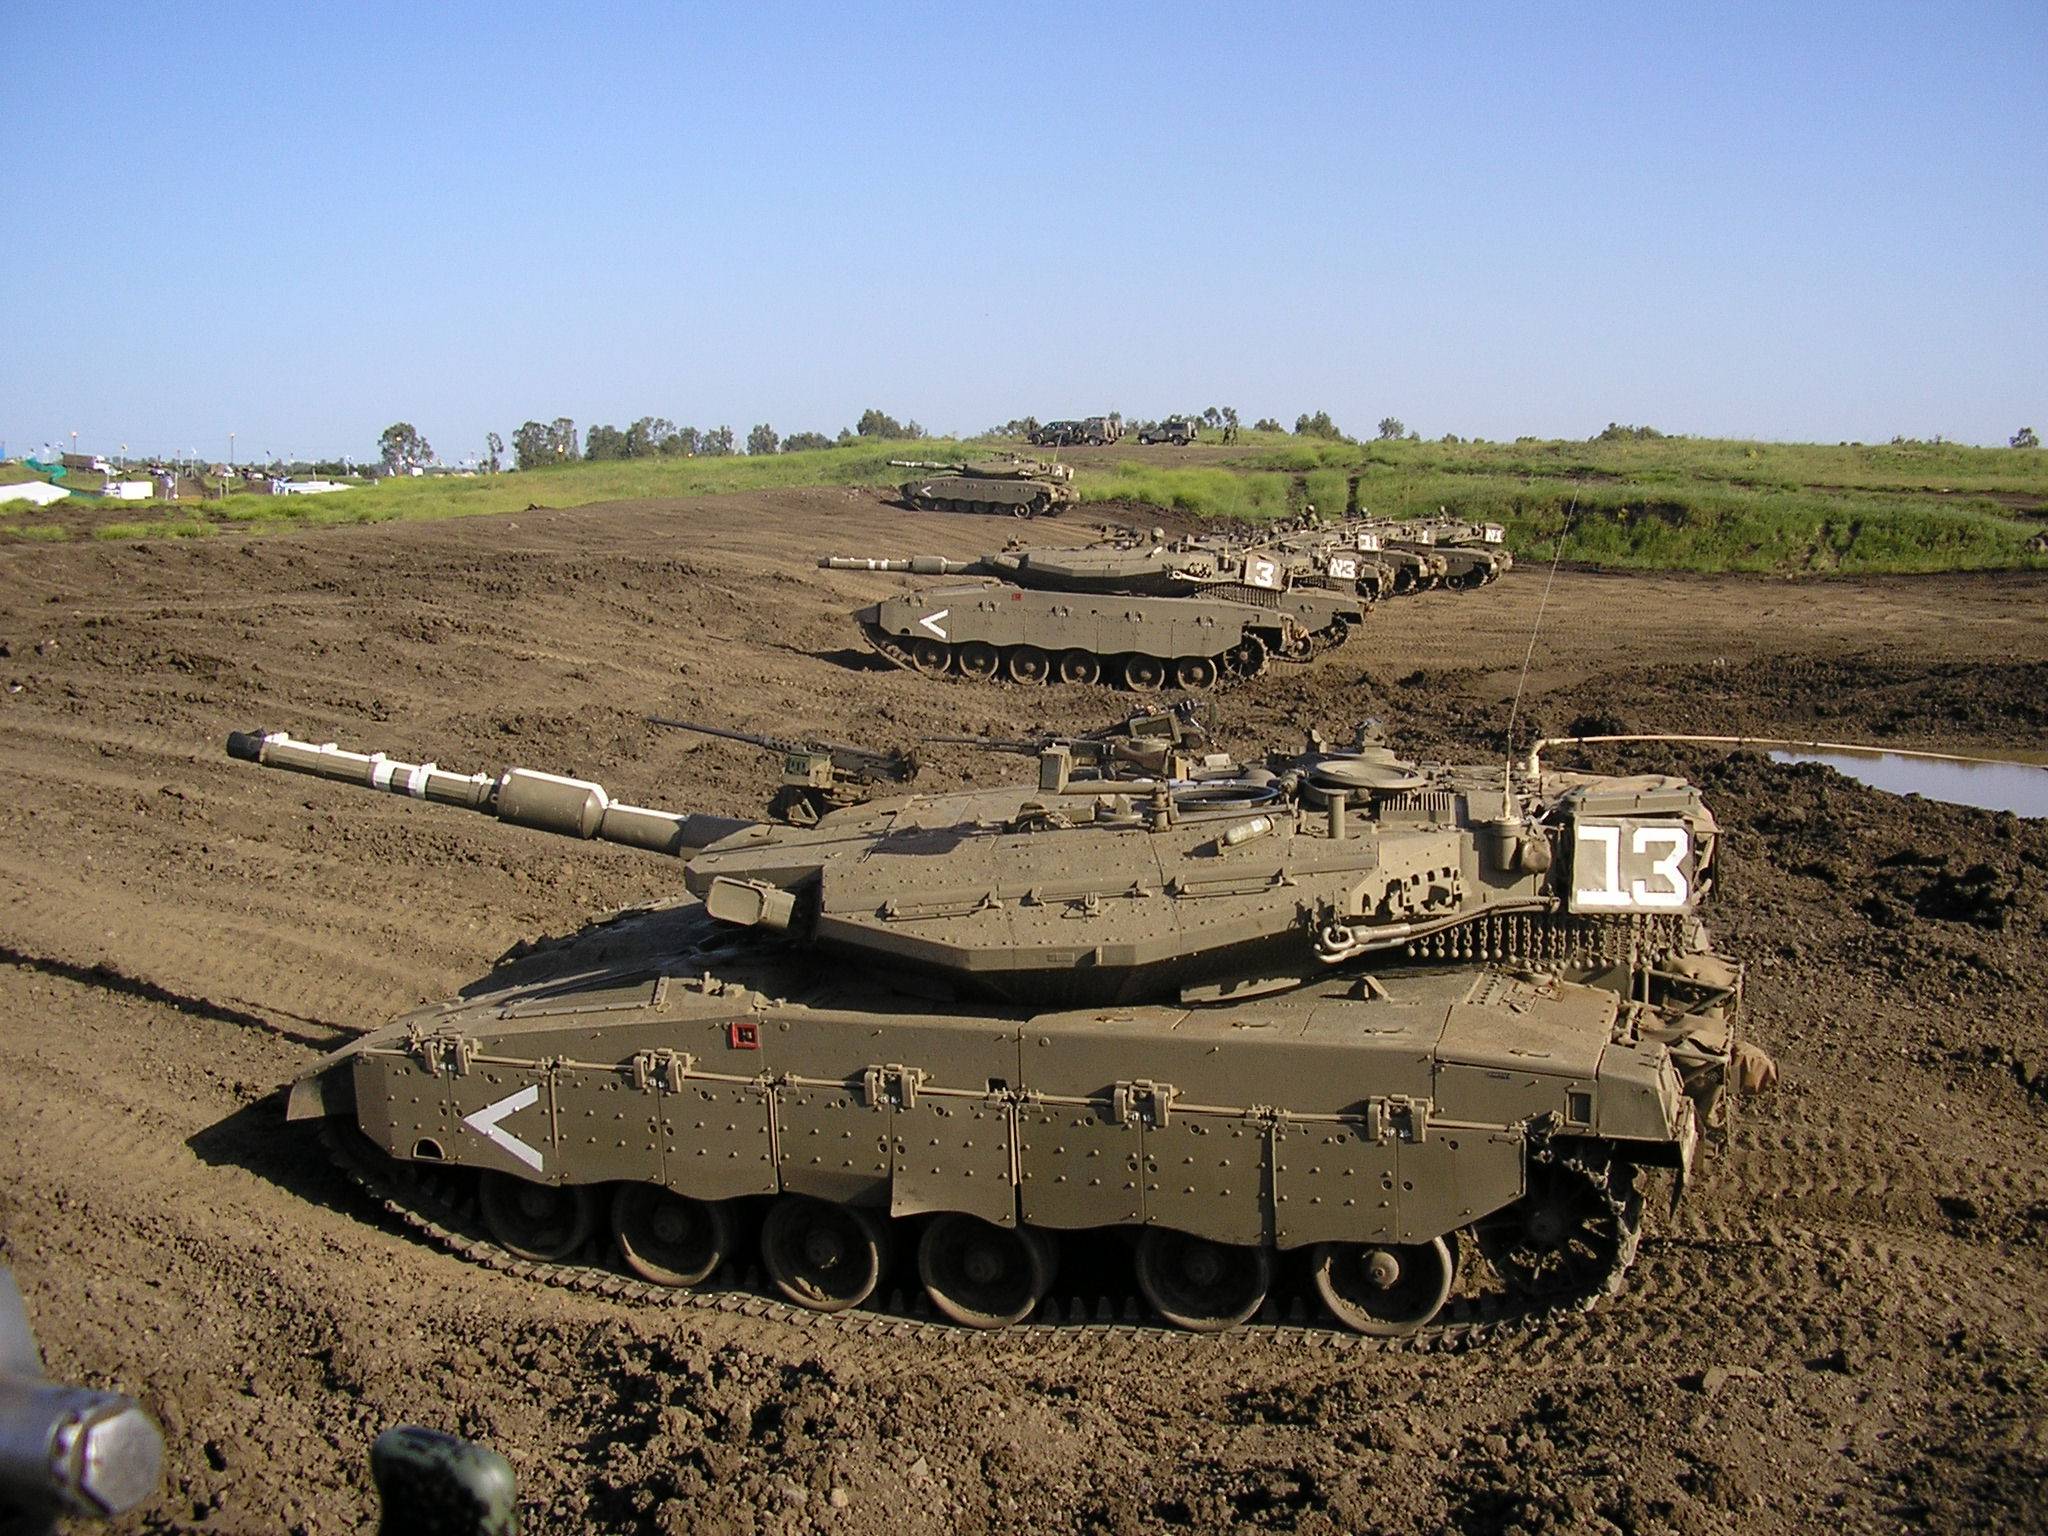 Меркава 5 основной боевой танк израильской армии, история создания и современные технические характеристики ттх и модификации merkava